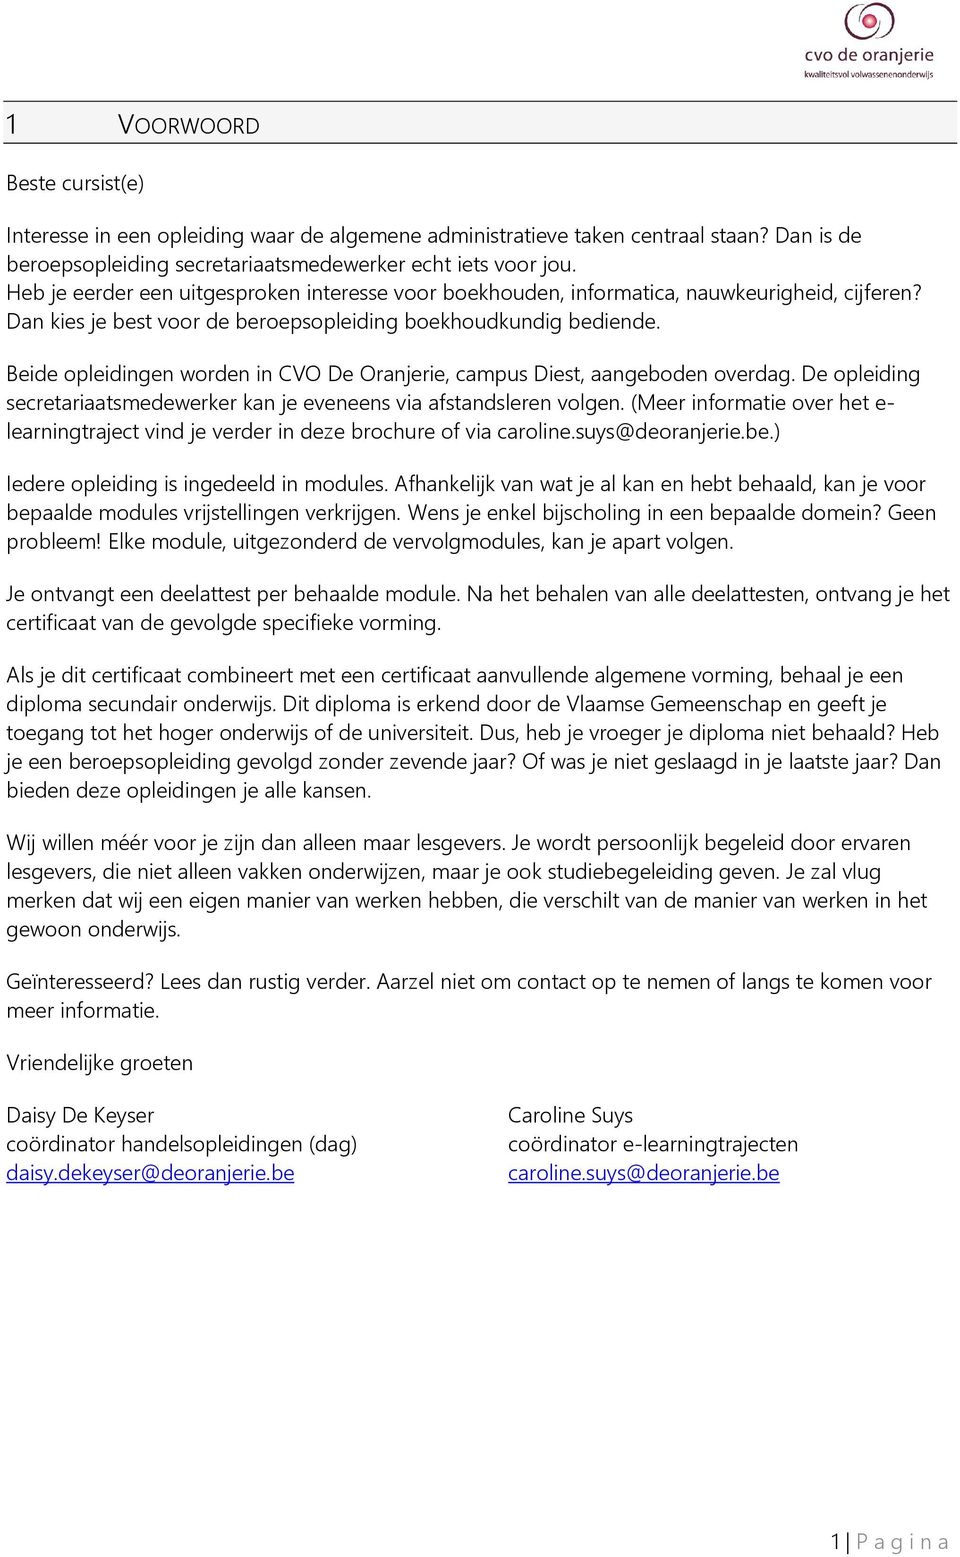 Beide pleidingen wrden in CVO De Oranjerie, campus Diest, aangebden verdag. De pleiding secretariaatsmedewerker kan je eveneens via afstandsleren vlgen.